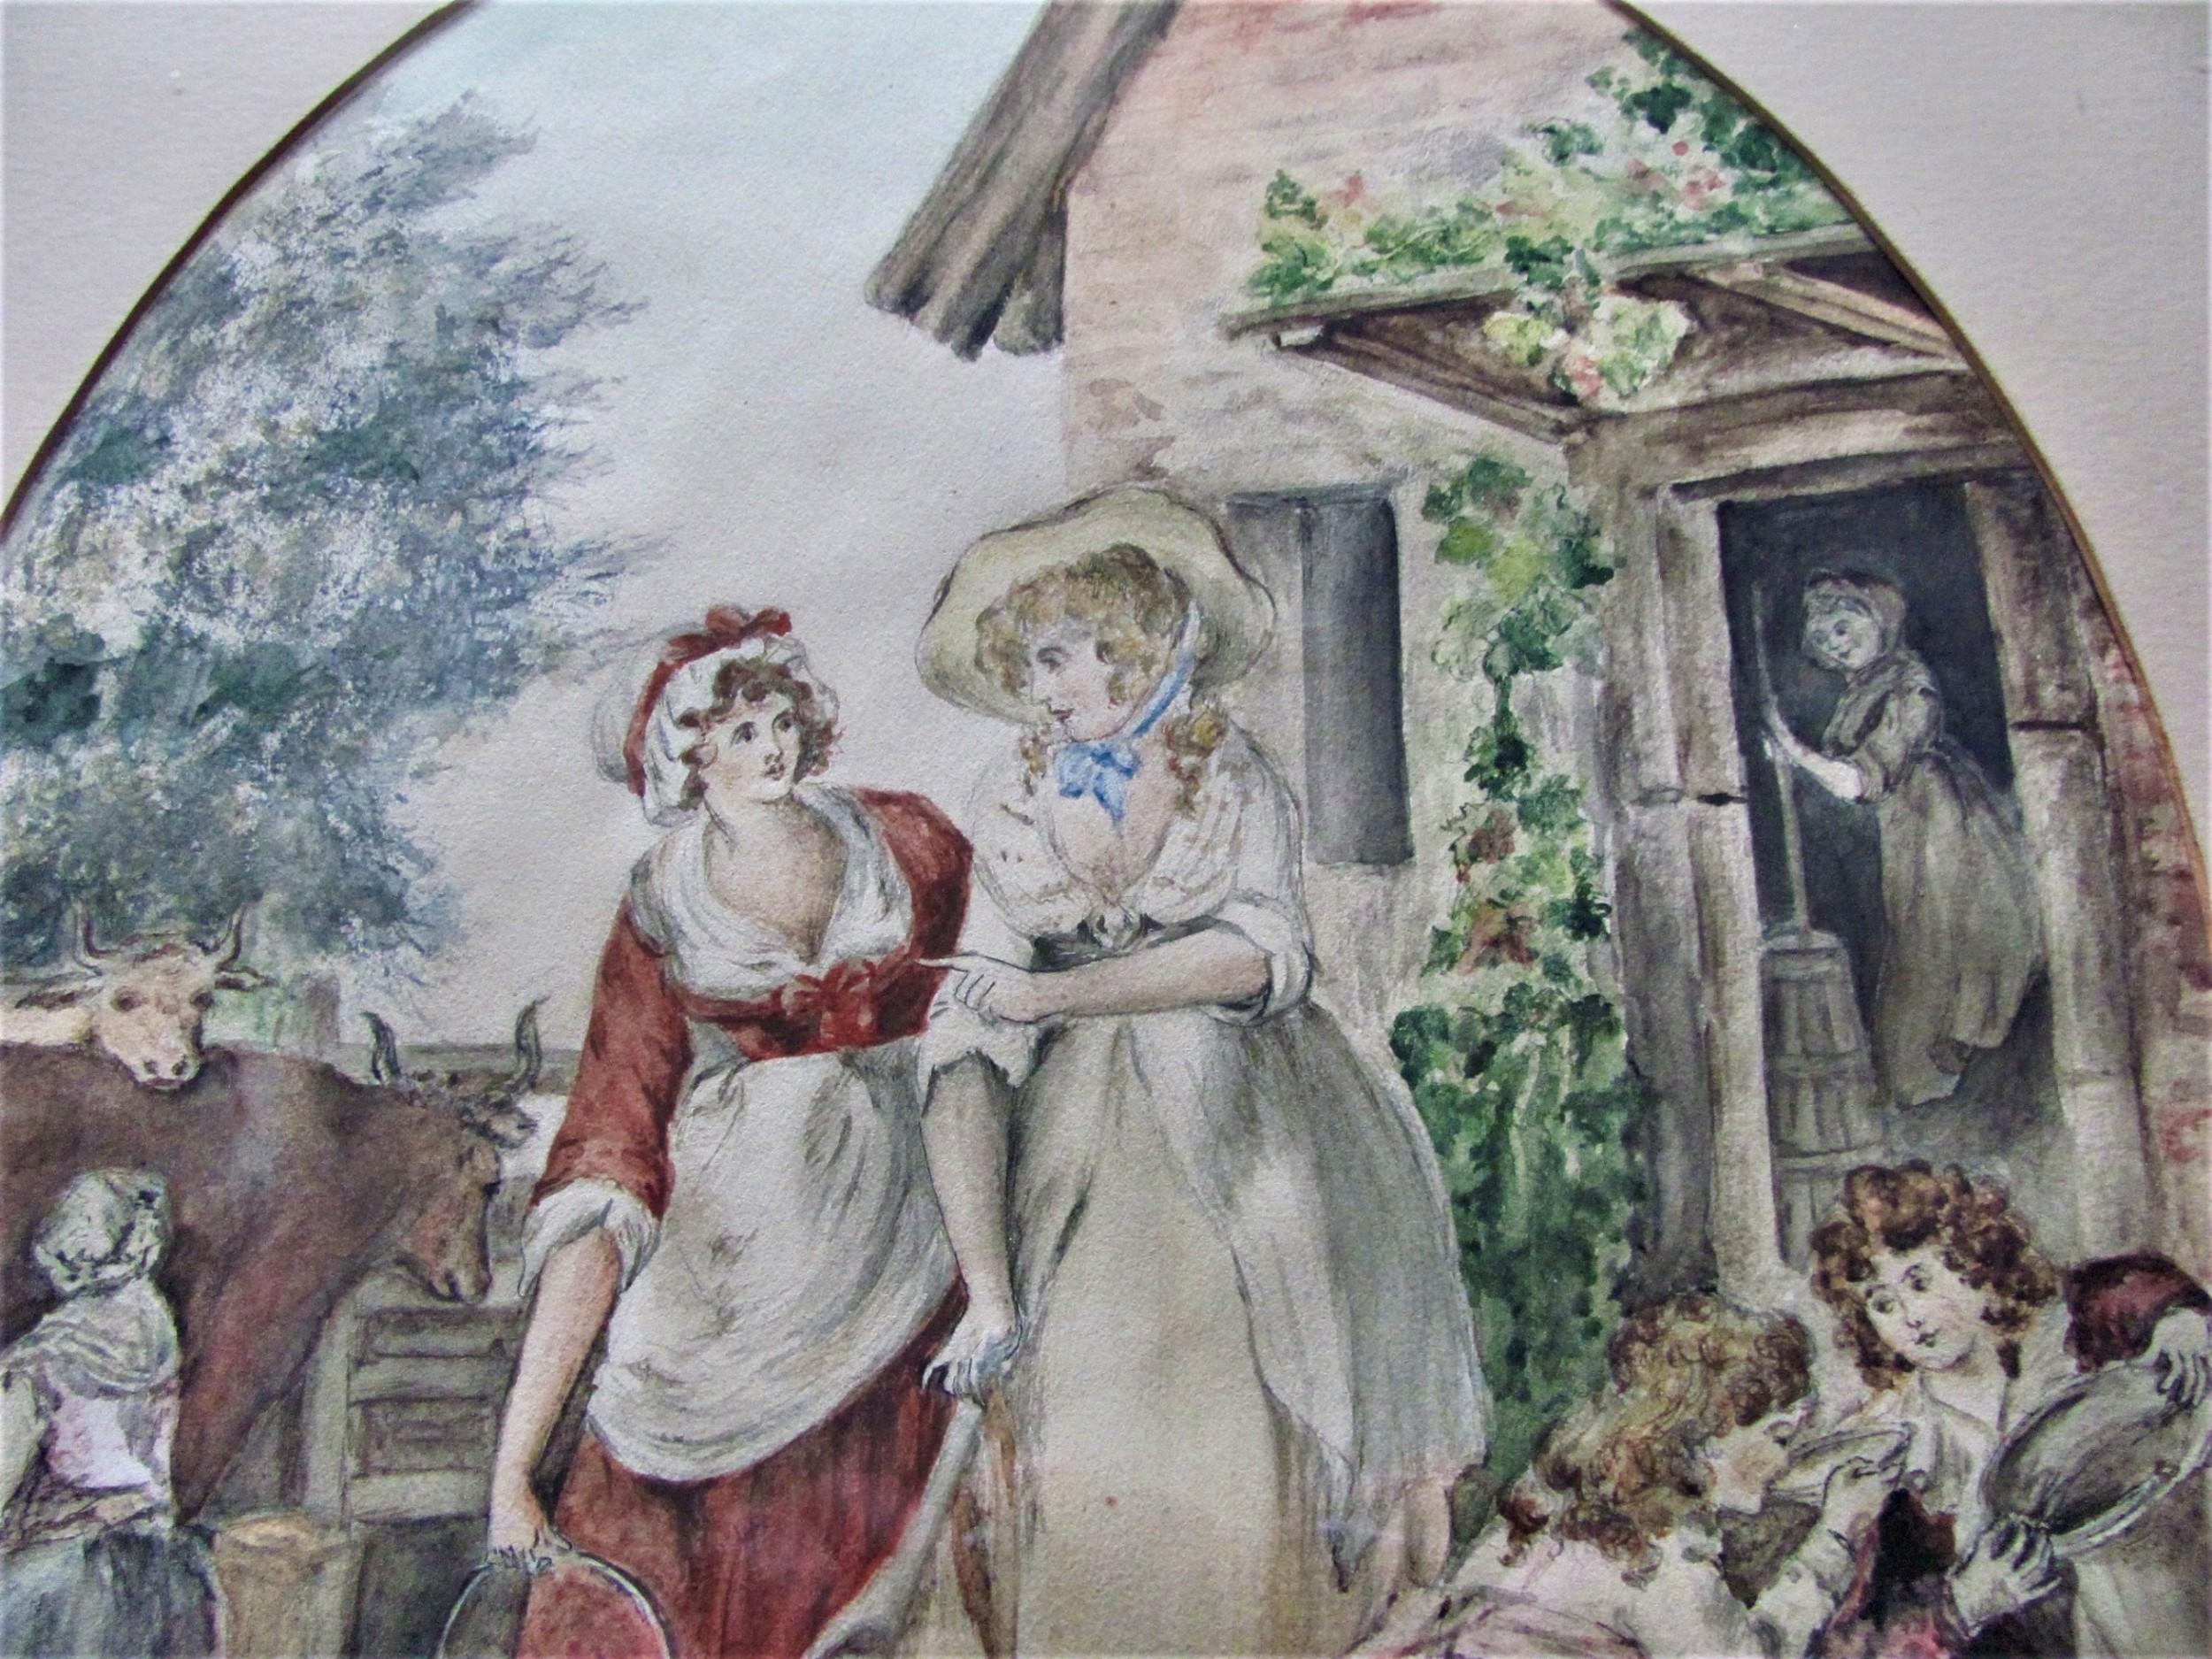 Aquarell-Porträt-Landschaftsssssszene mit Milchmädchen und Bauernhofsszene, 19. Jahrhundert (Englische Schule), Art, von 19th Century English School